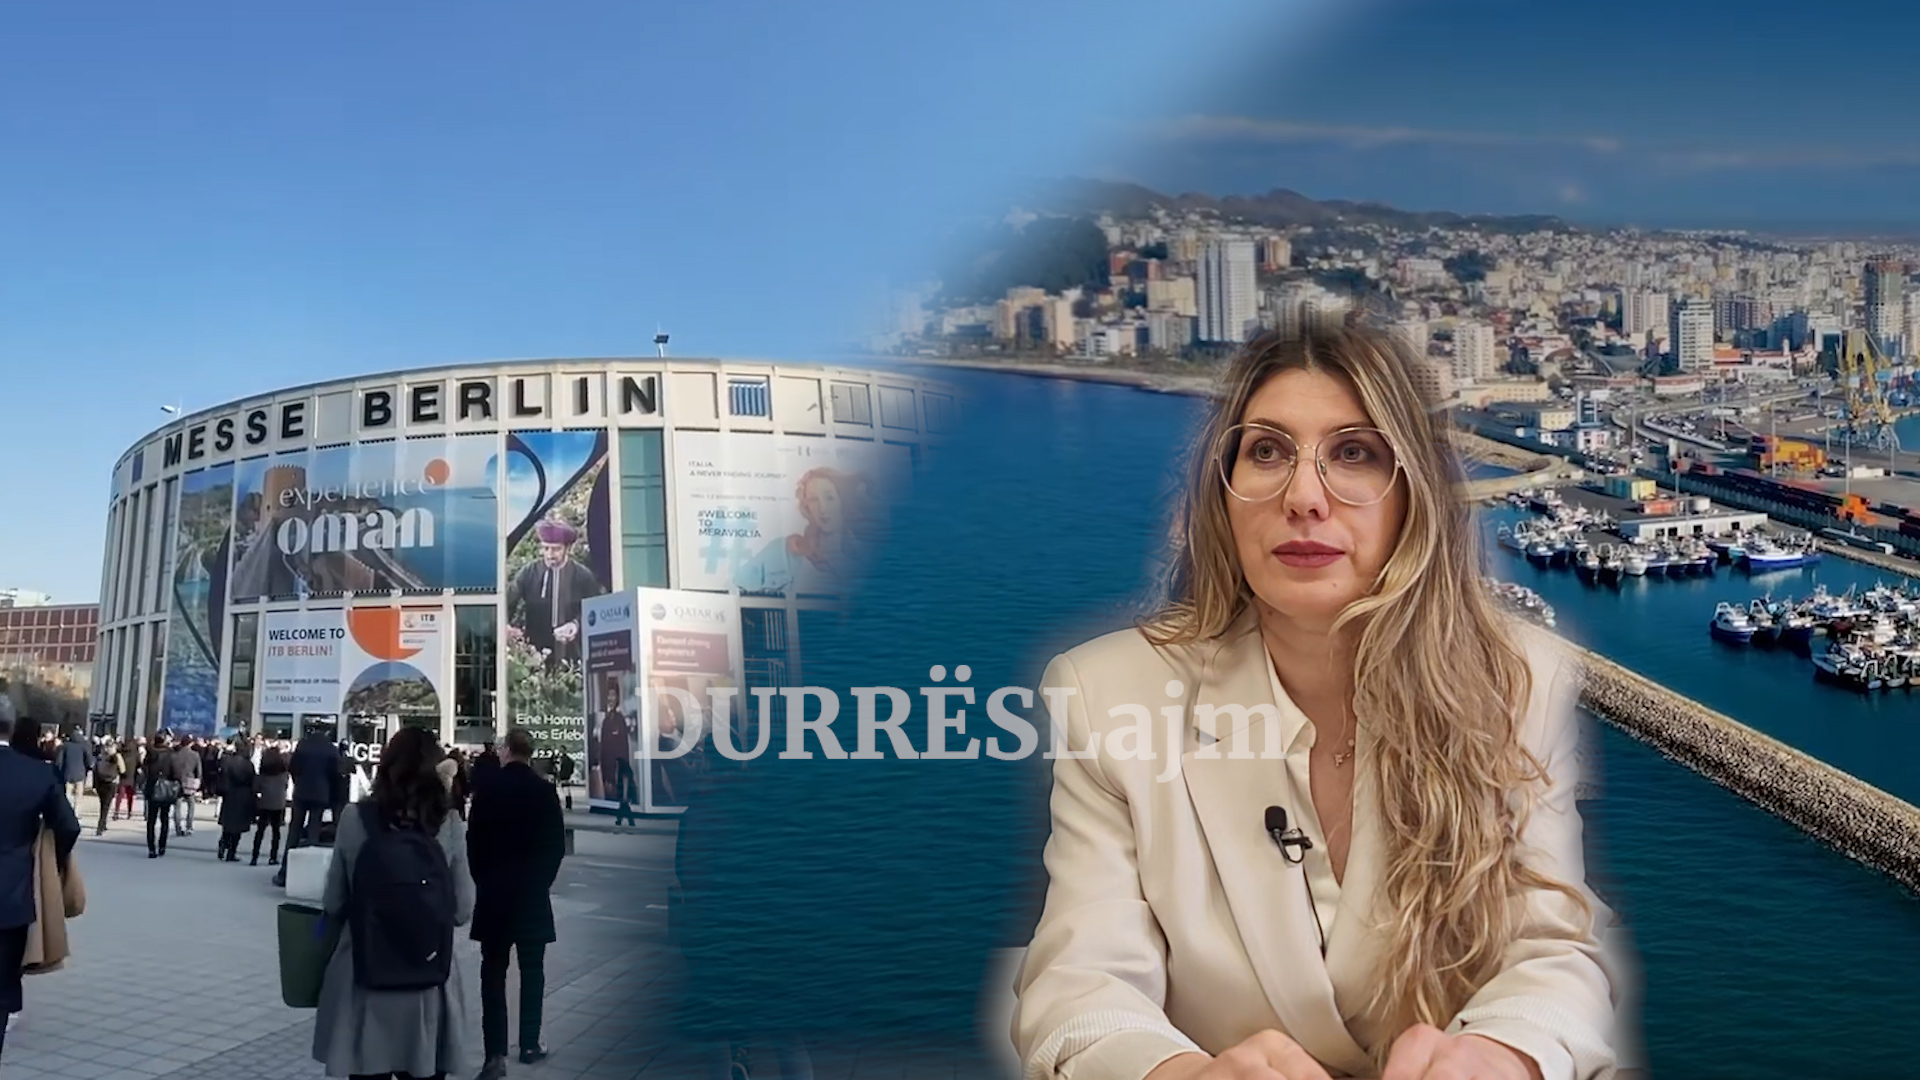 Durrësi në panairin e Berlinit, cilat janë risitë që kryeqyteti shqiptar i turizmit sjell këtë sezon (VIDEO)